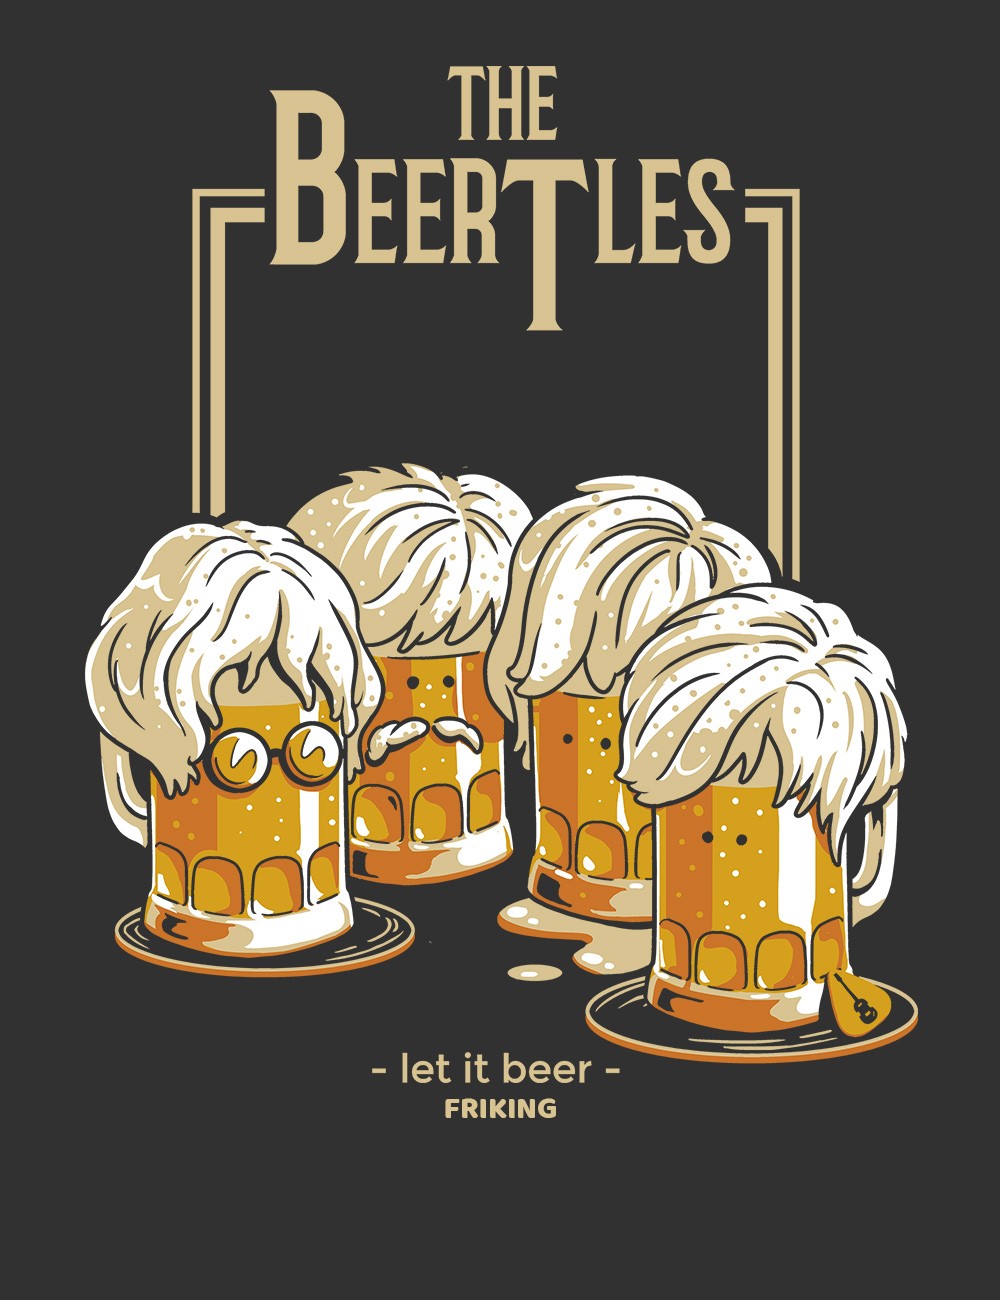 Let it beer